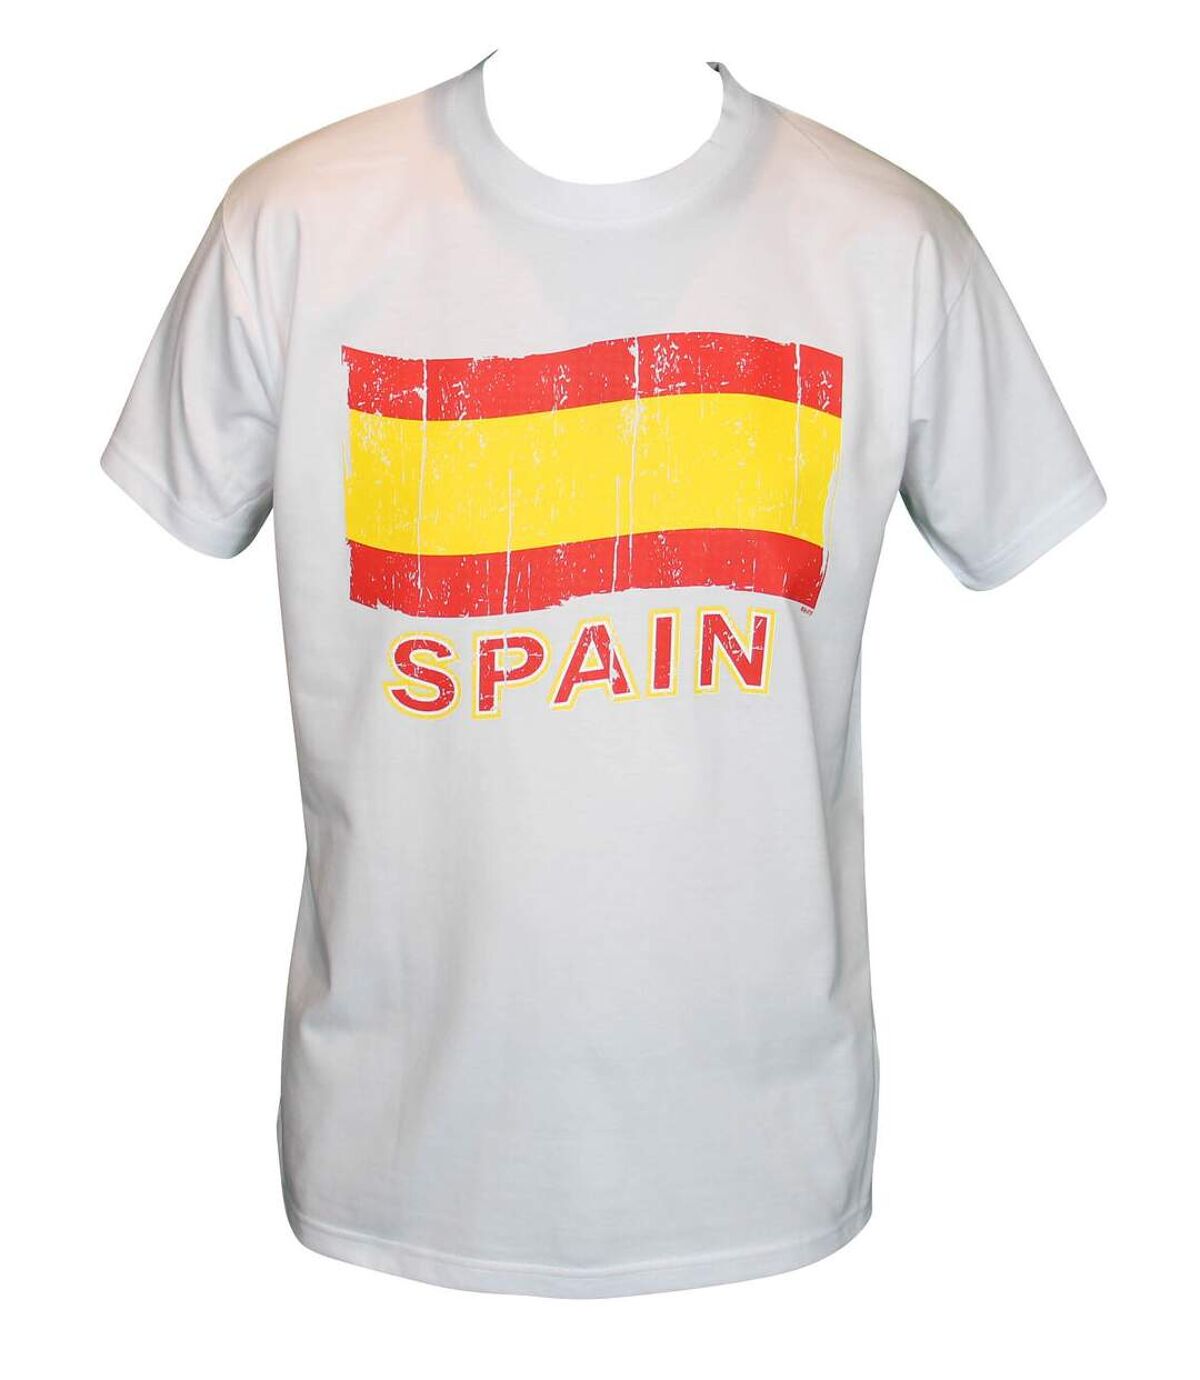 T-shirt homme manches courtes - Espagne 6028 - blanc